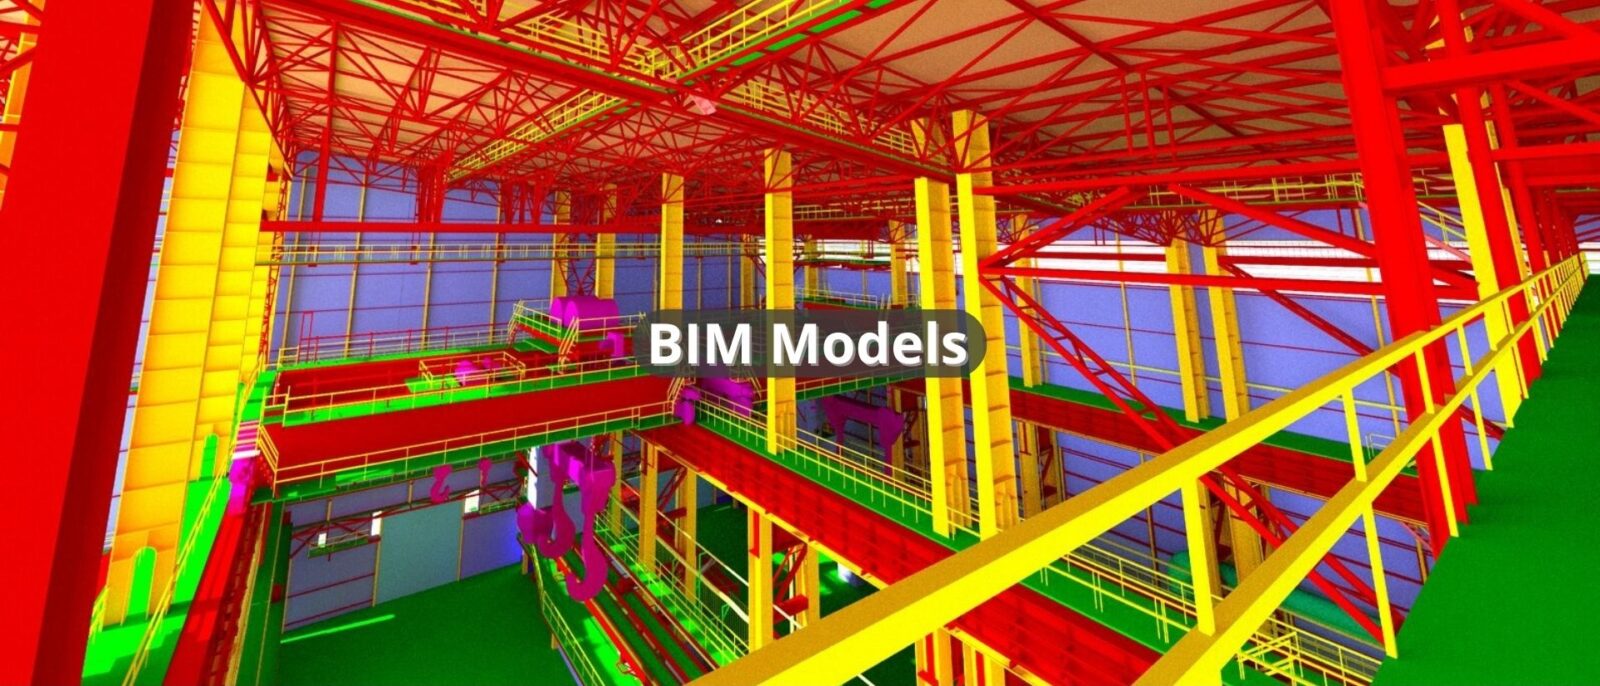 BIM models